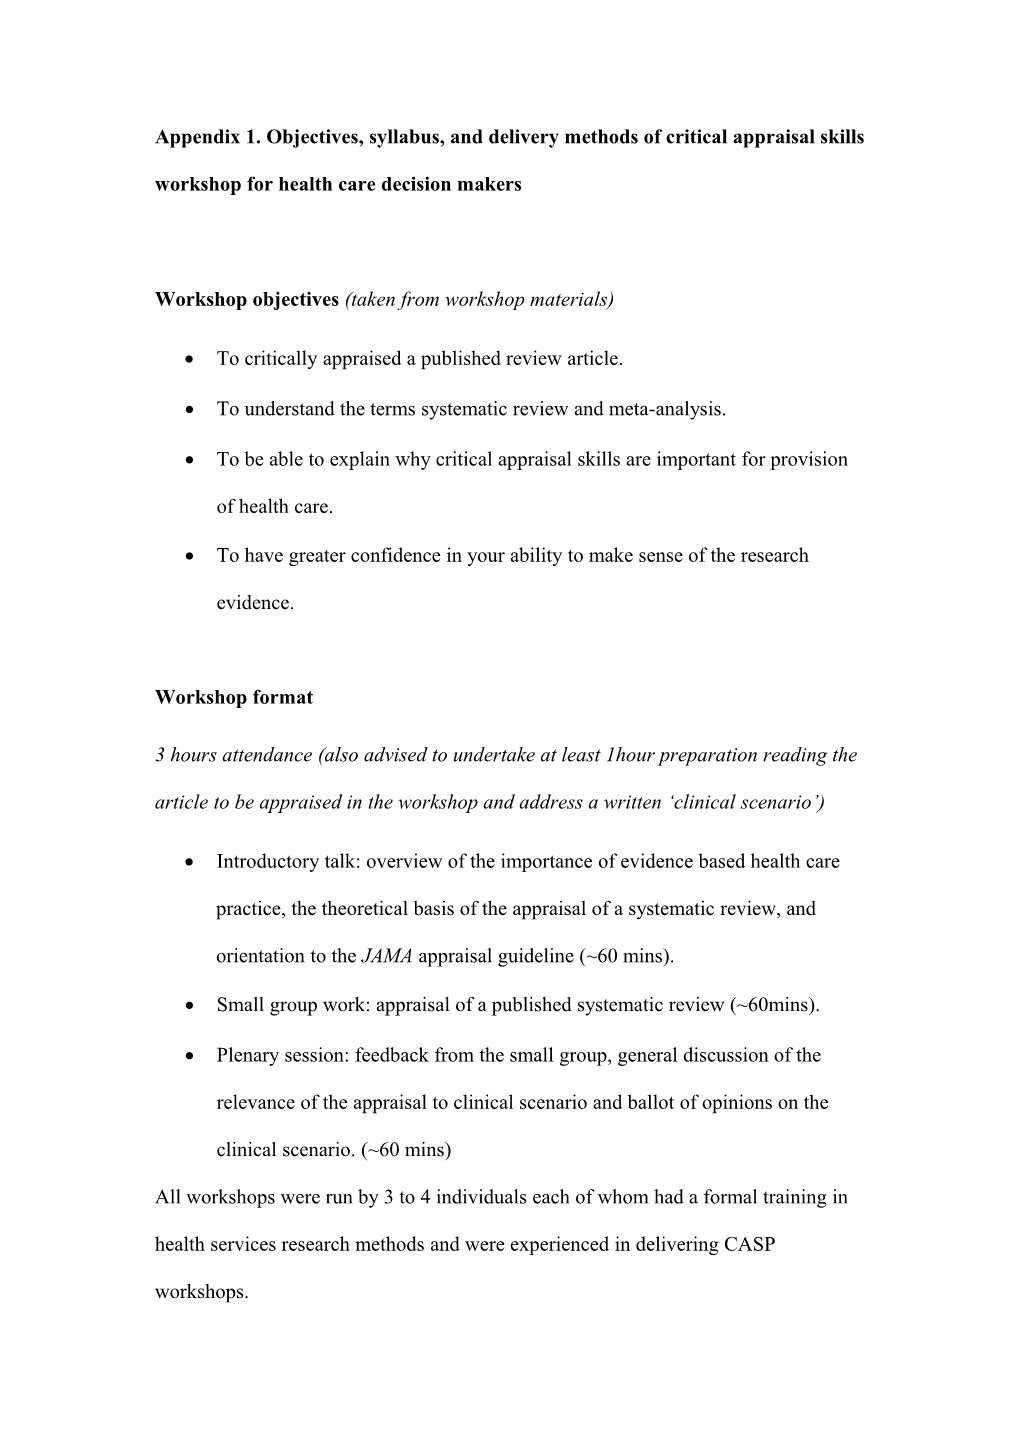 Workshop Objectives (Taken from Workshop Materials)